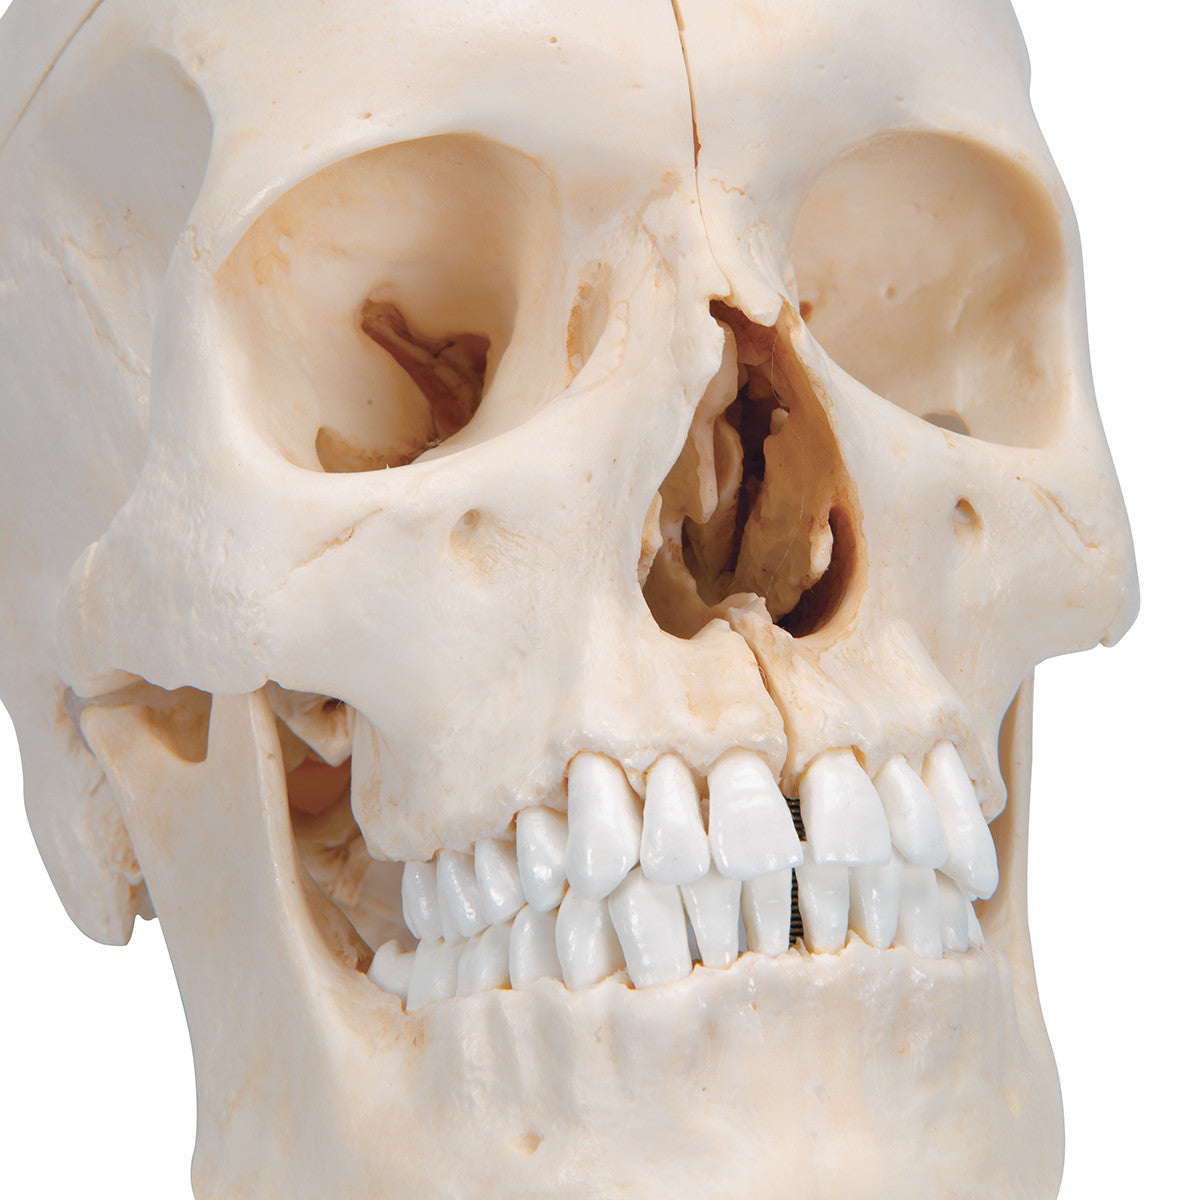 Bony Skull, 6-part | 3B Scientific A281